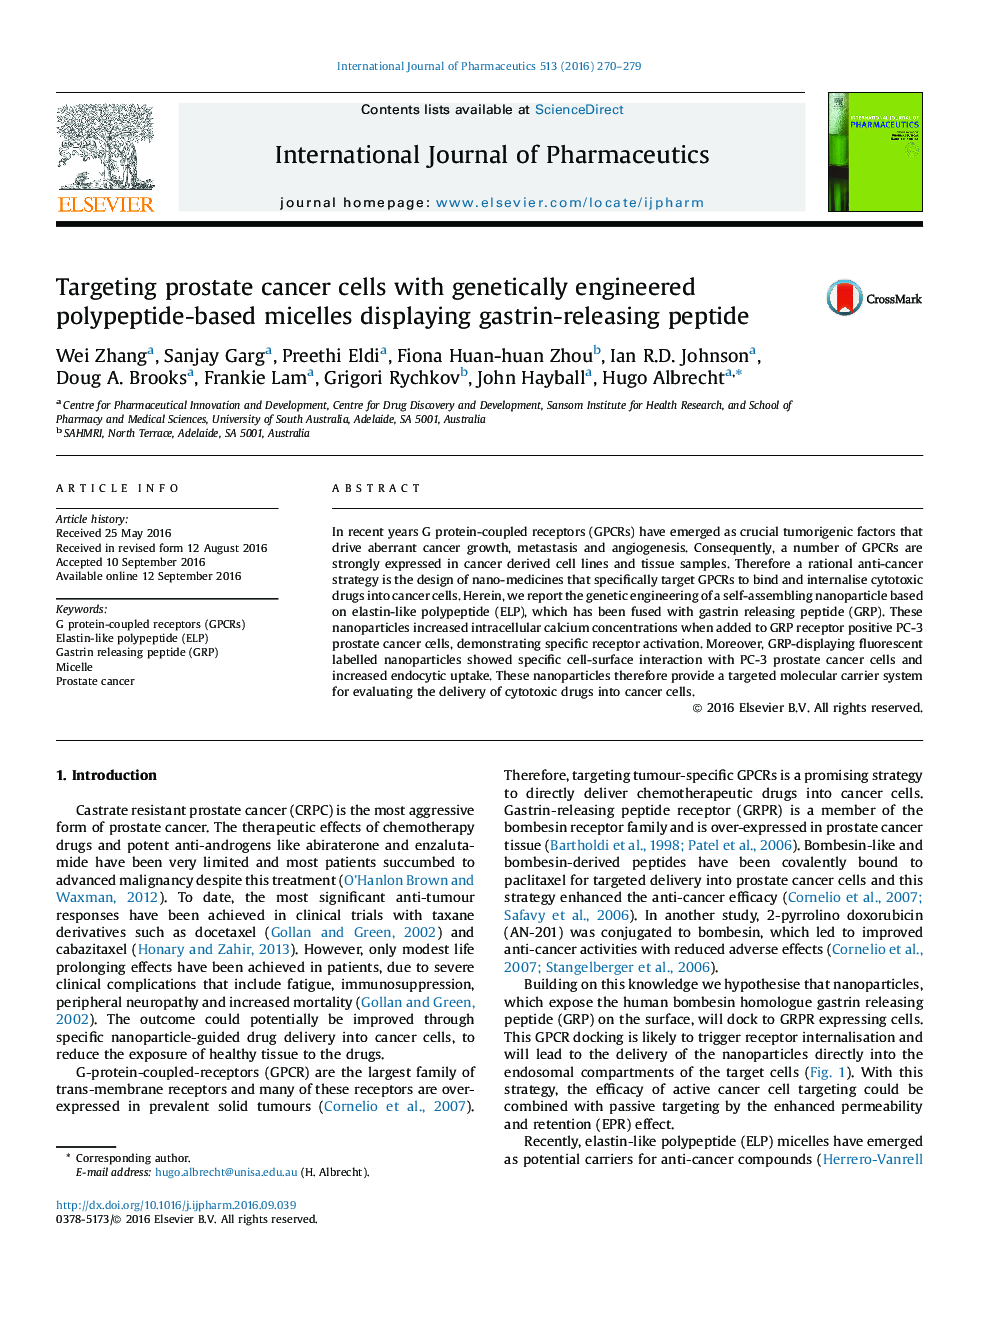 هدف قرار دادن سلول های سرطانی پروستات با میسل های مبتنی بر پلیپپتید مهندسی ژنتیکی و نشان دادن پپتید آزاد کننده گاسترین 